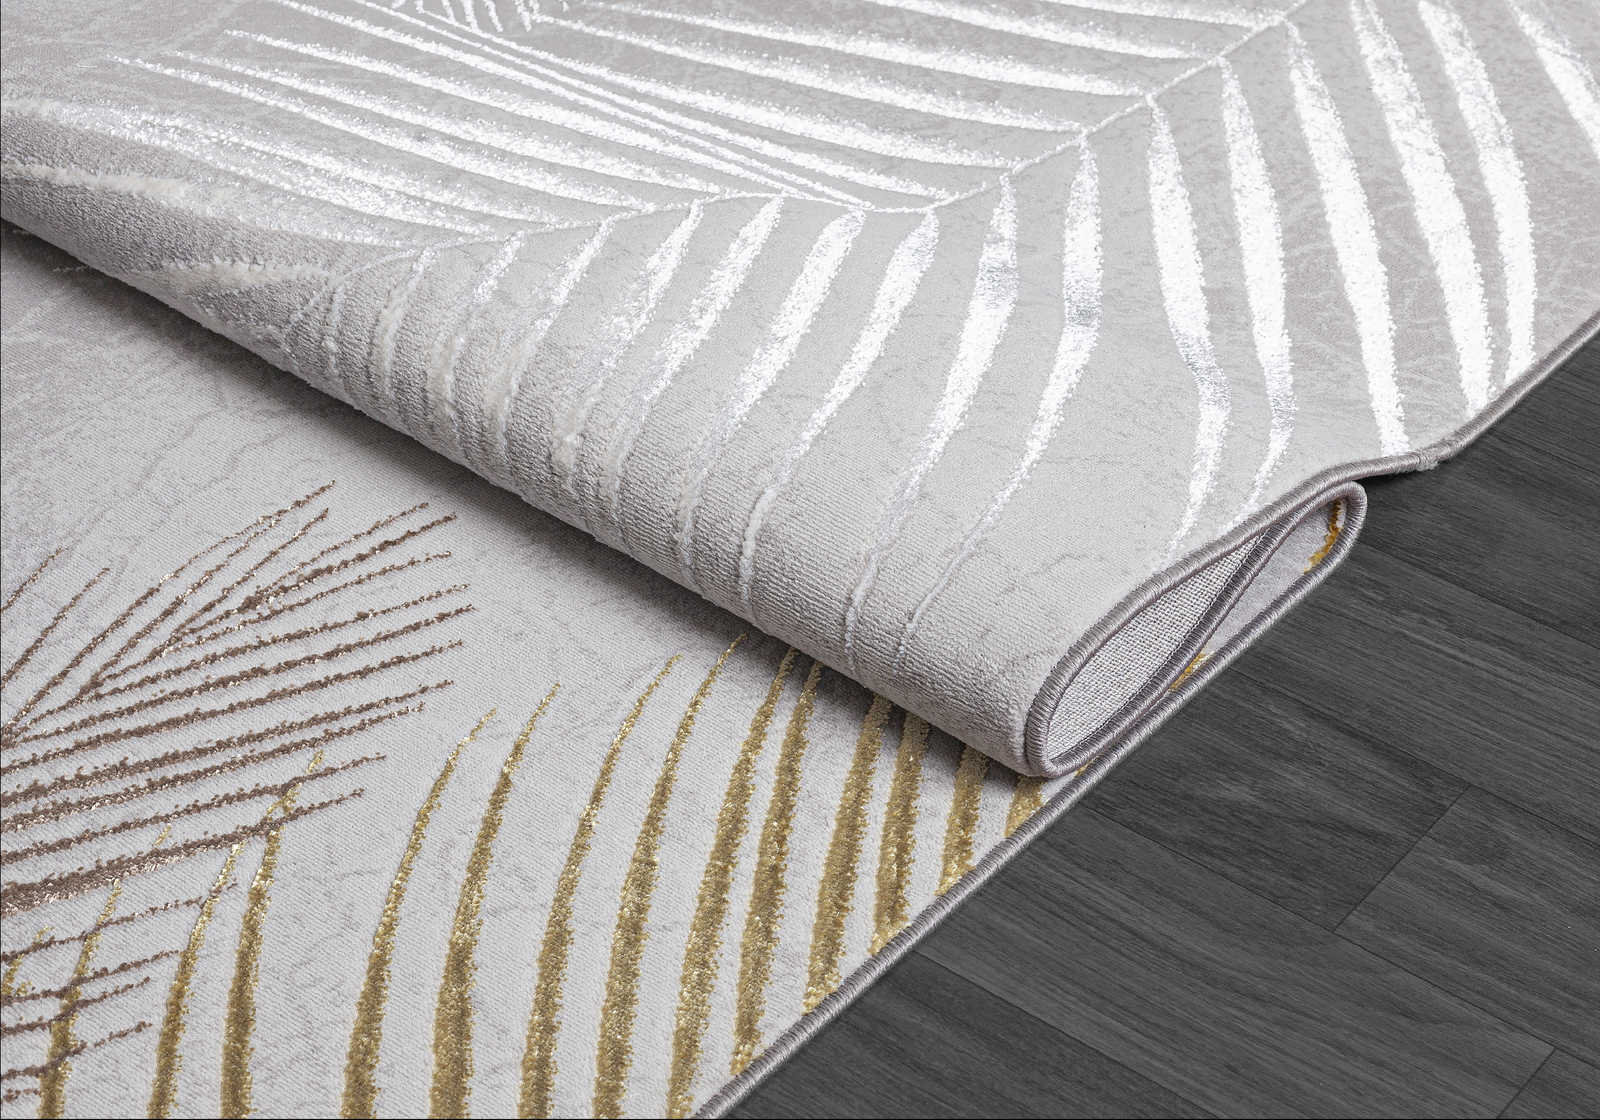             Knuffelzacht hoogpolig tapijt in grijs als loper - 200 x 140 cm
        